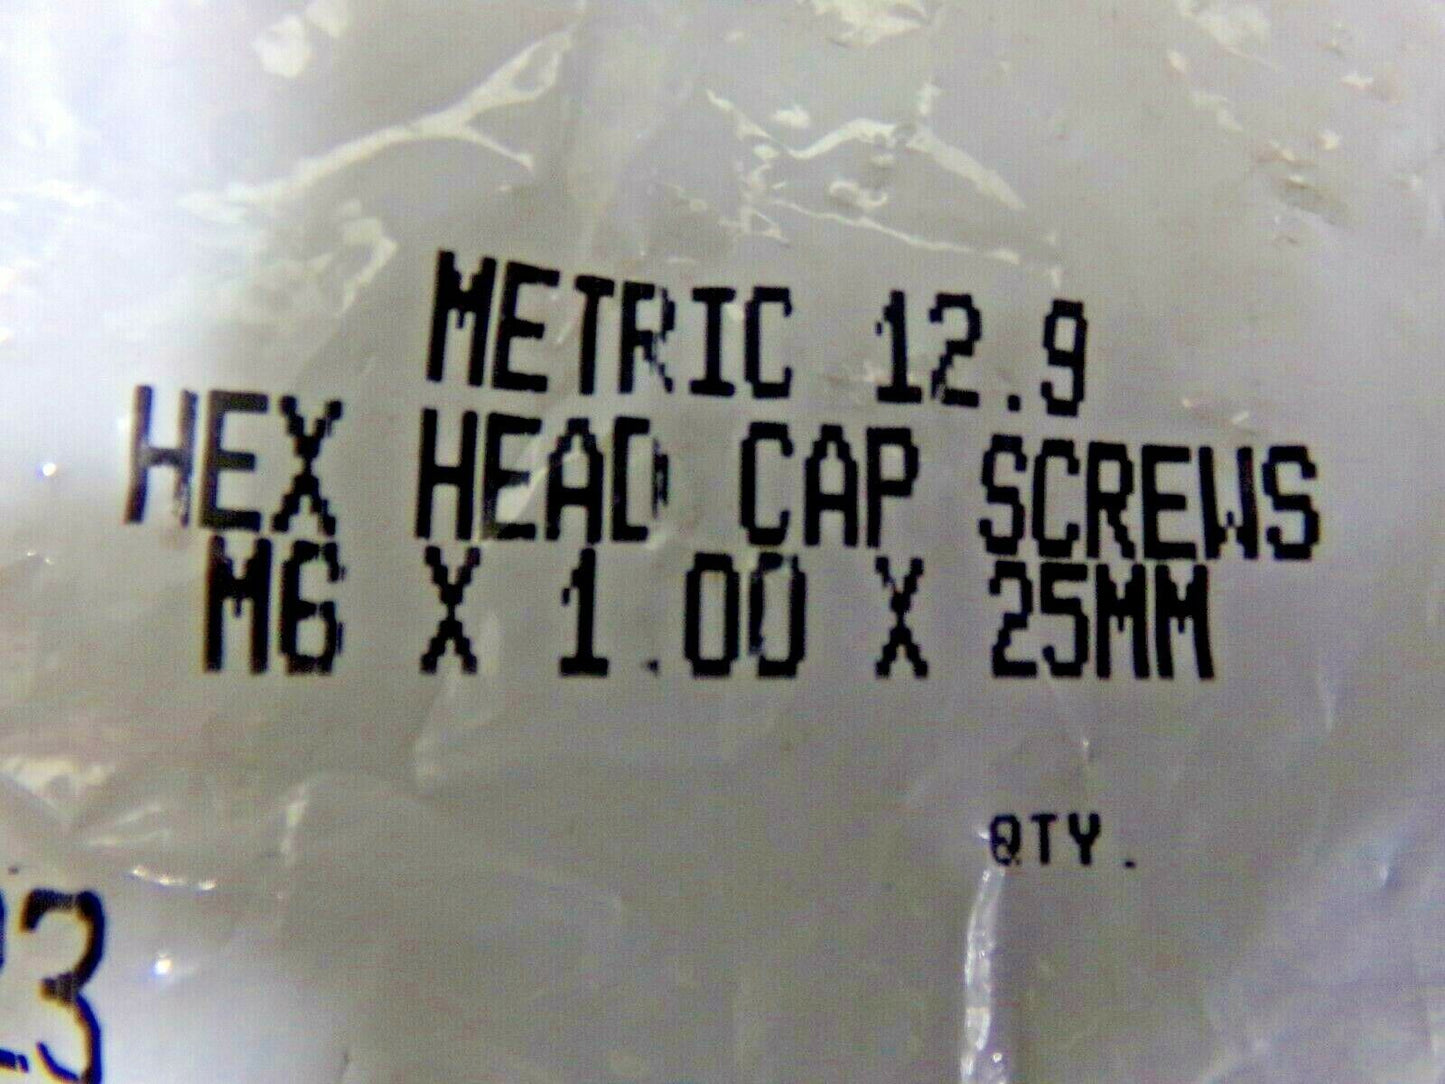 (50) METRIC 12.9 HEX HEAD  SCREW M6-1.00 X 25MM (183812251874-NBT13)